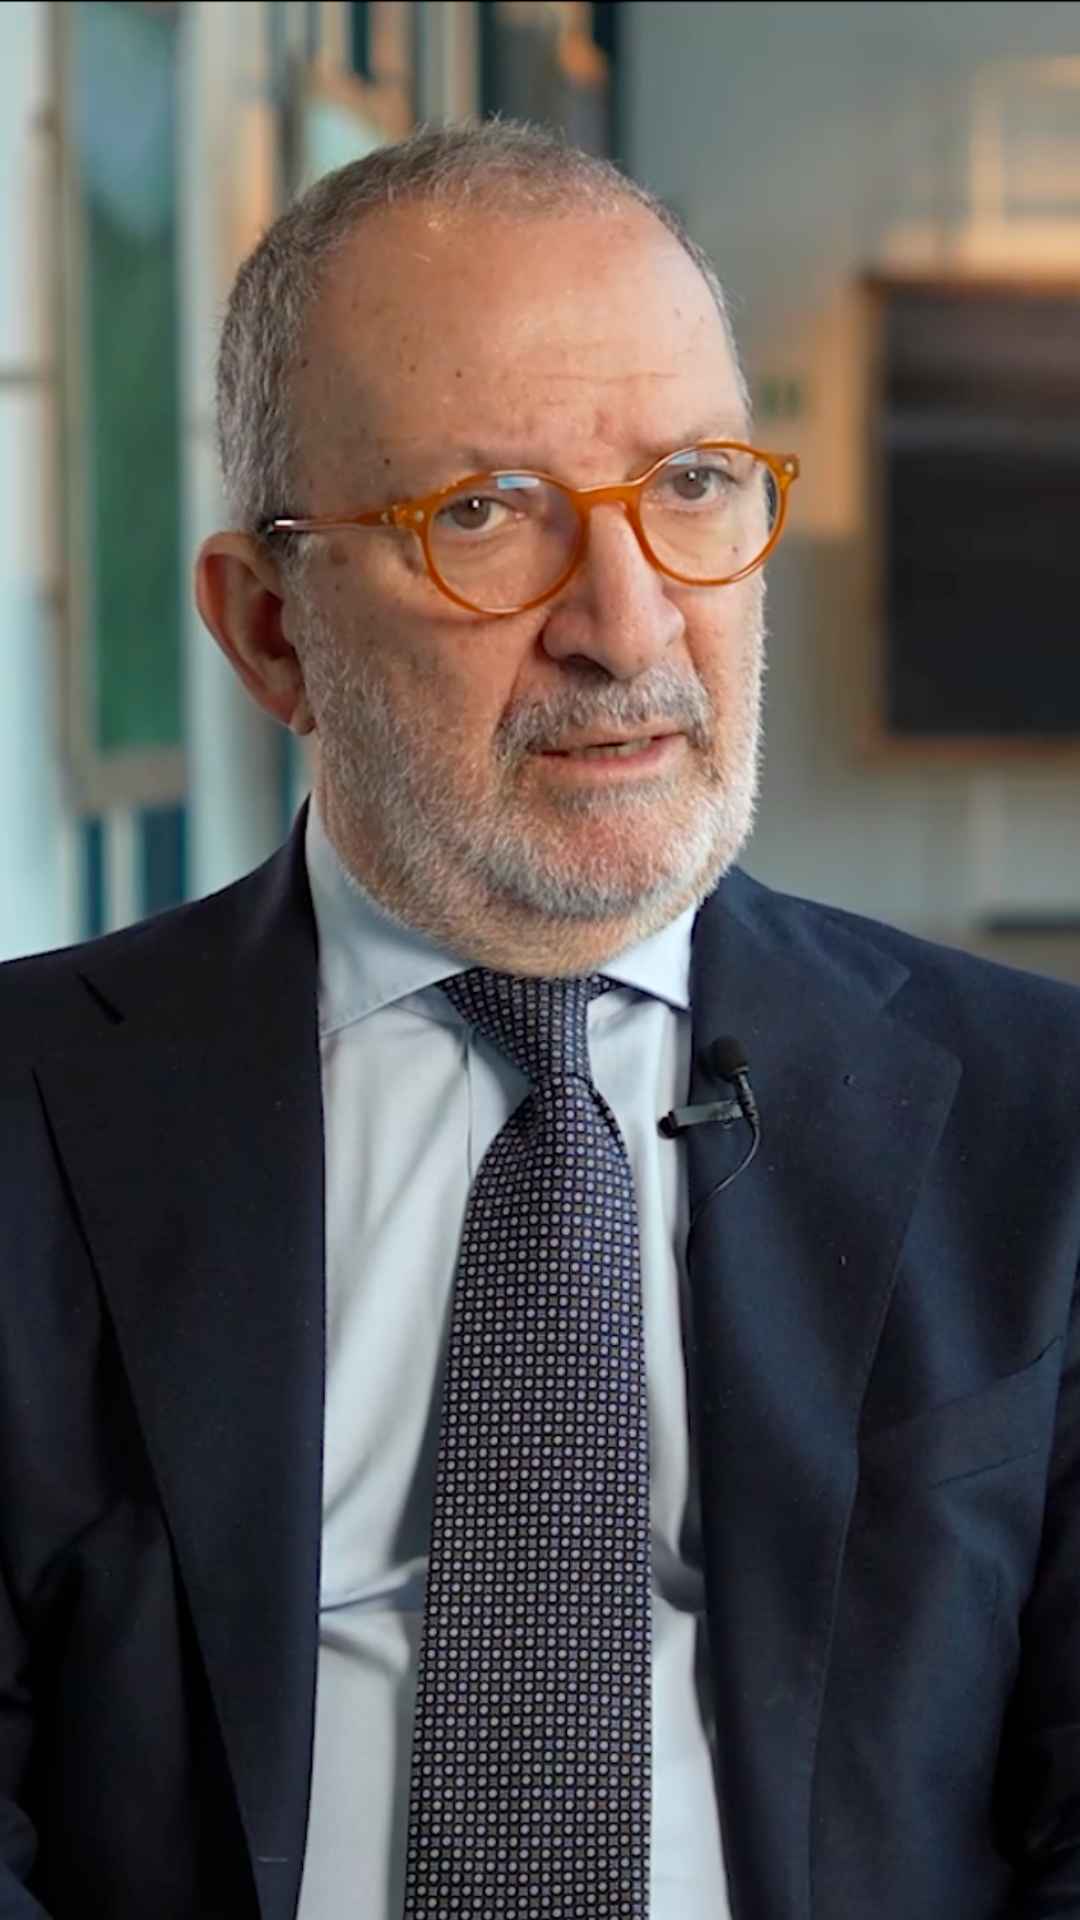 Antonio-Santocono-Presidente-Camera-di-Commercio-Padova-Talkoo